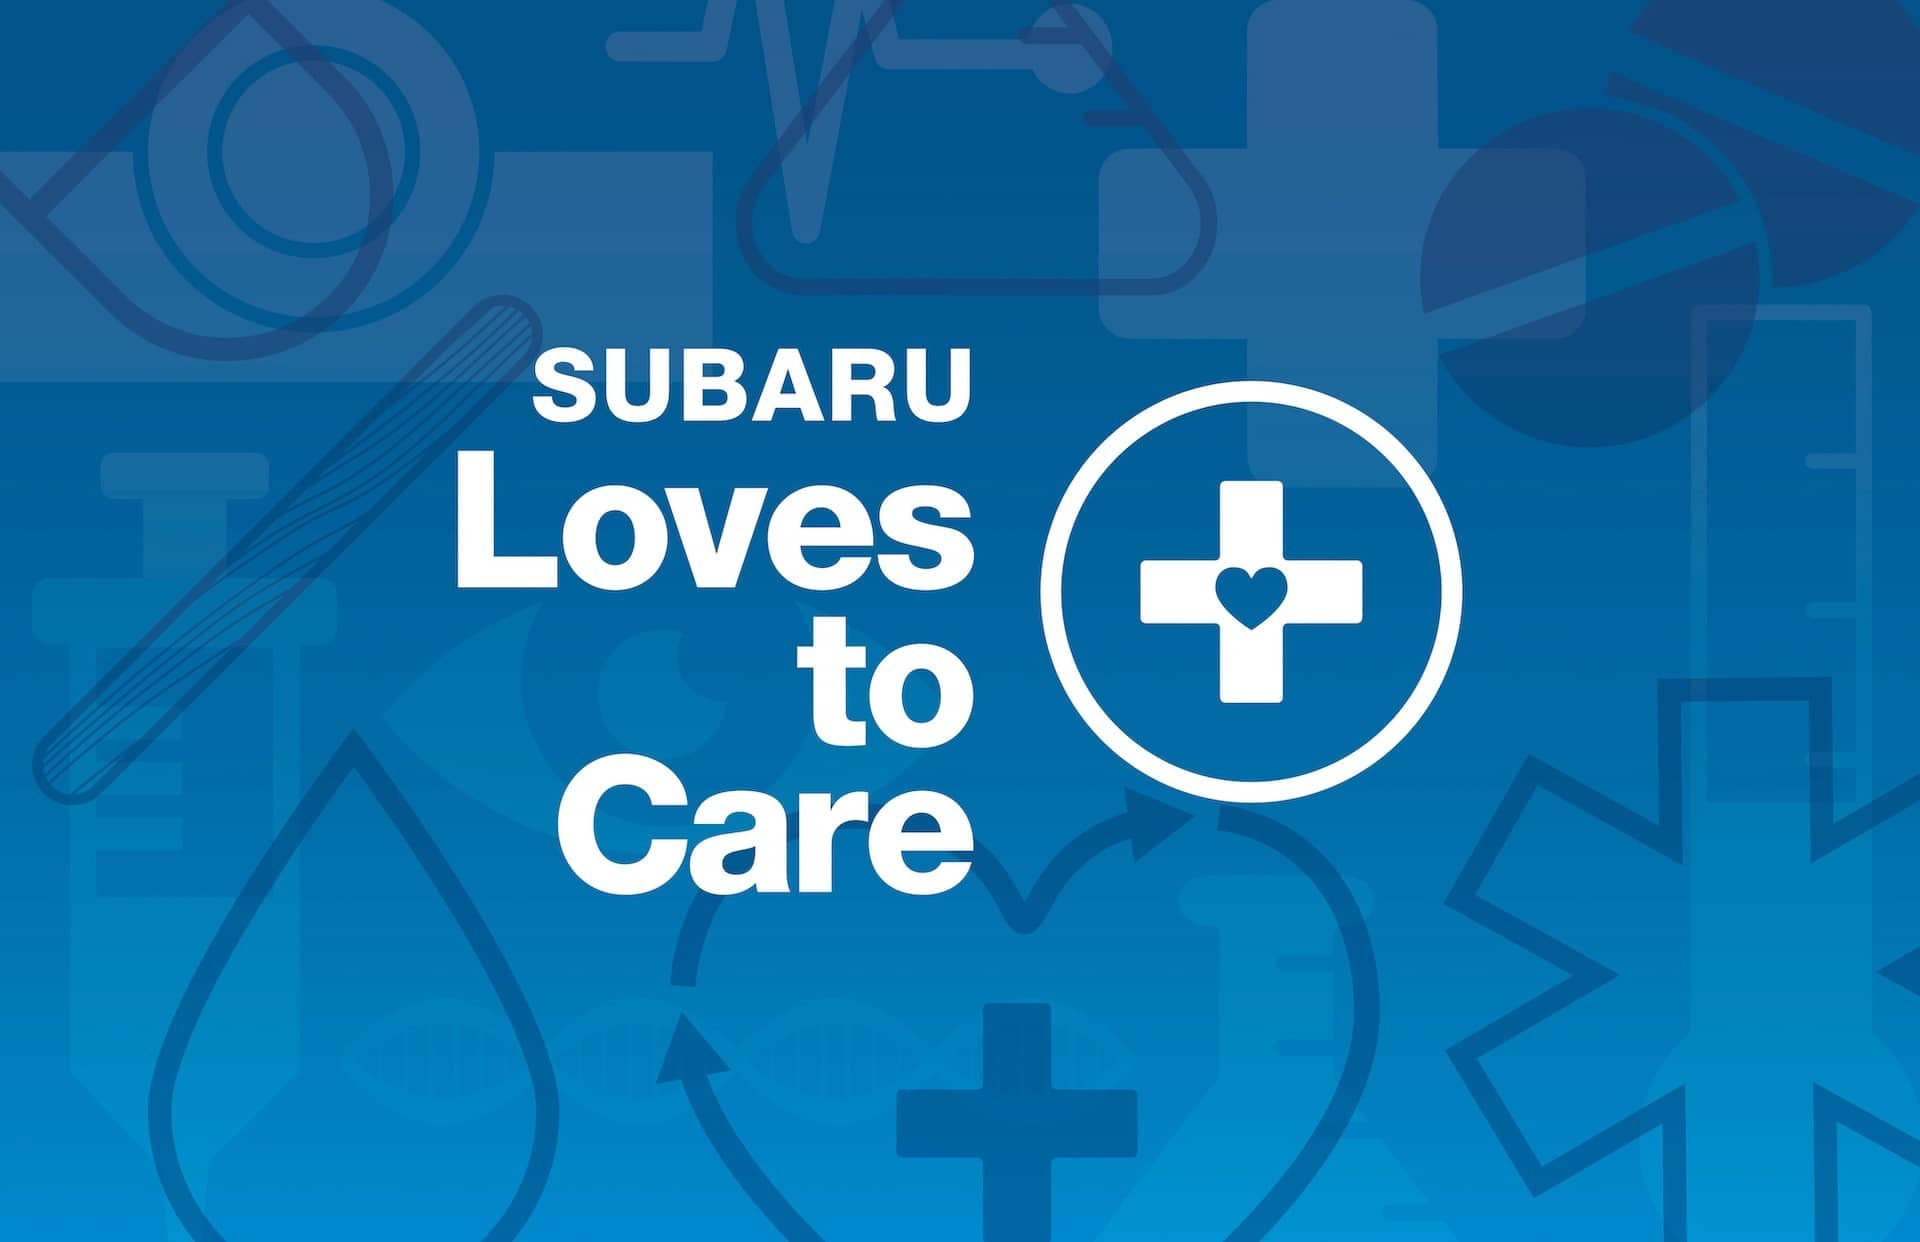 Subaru loves to care